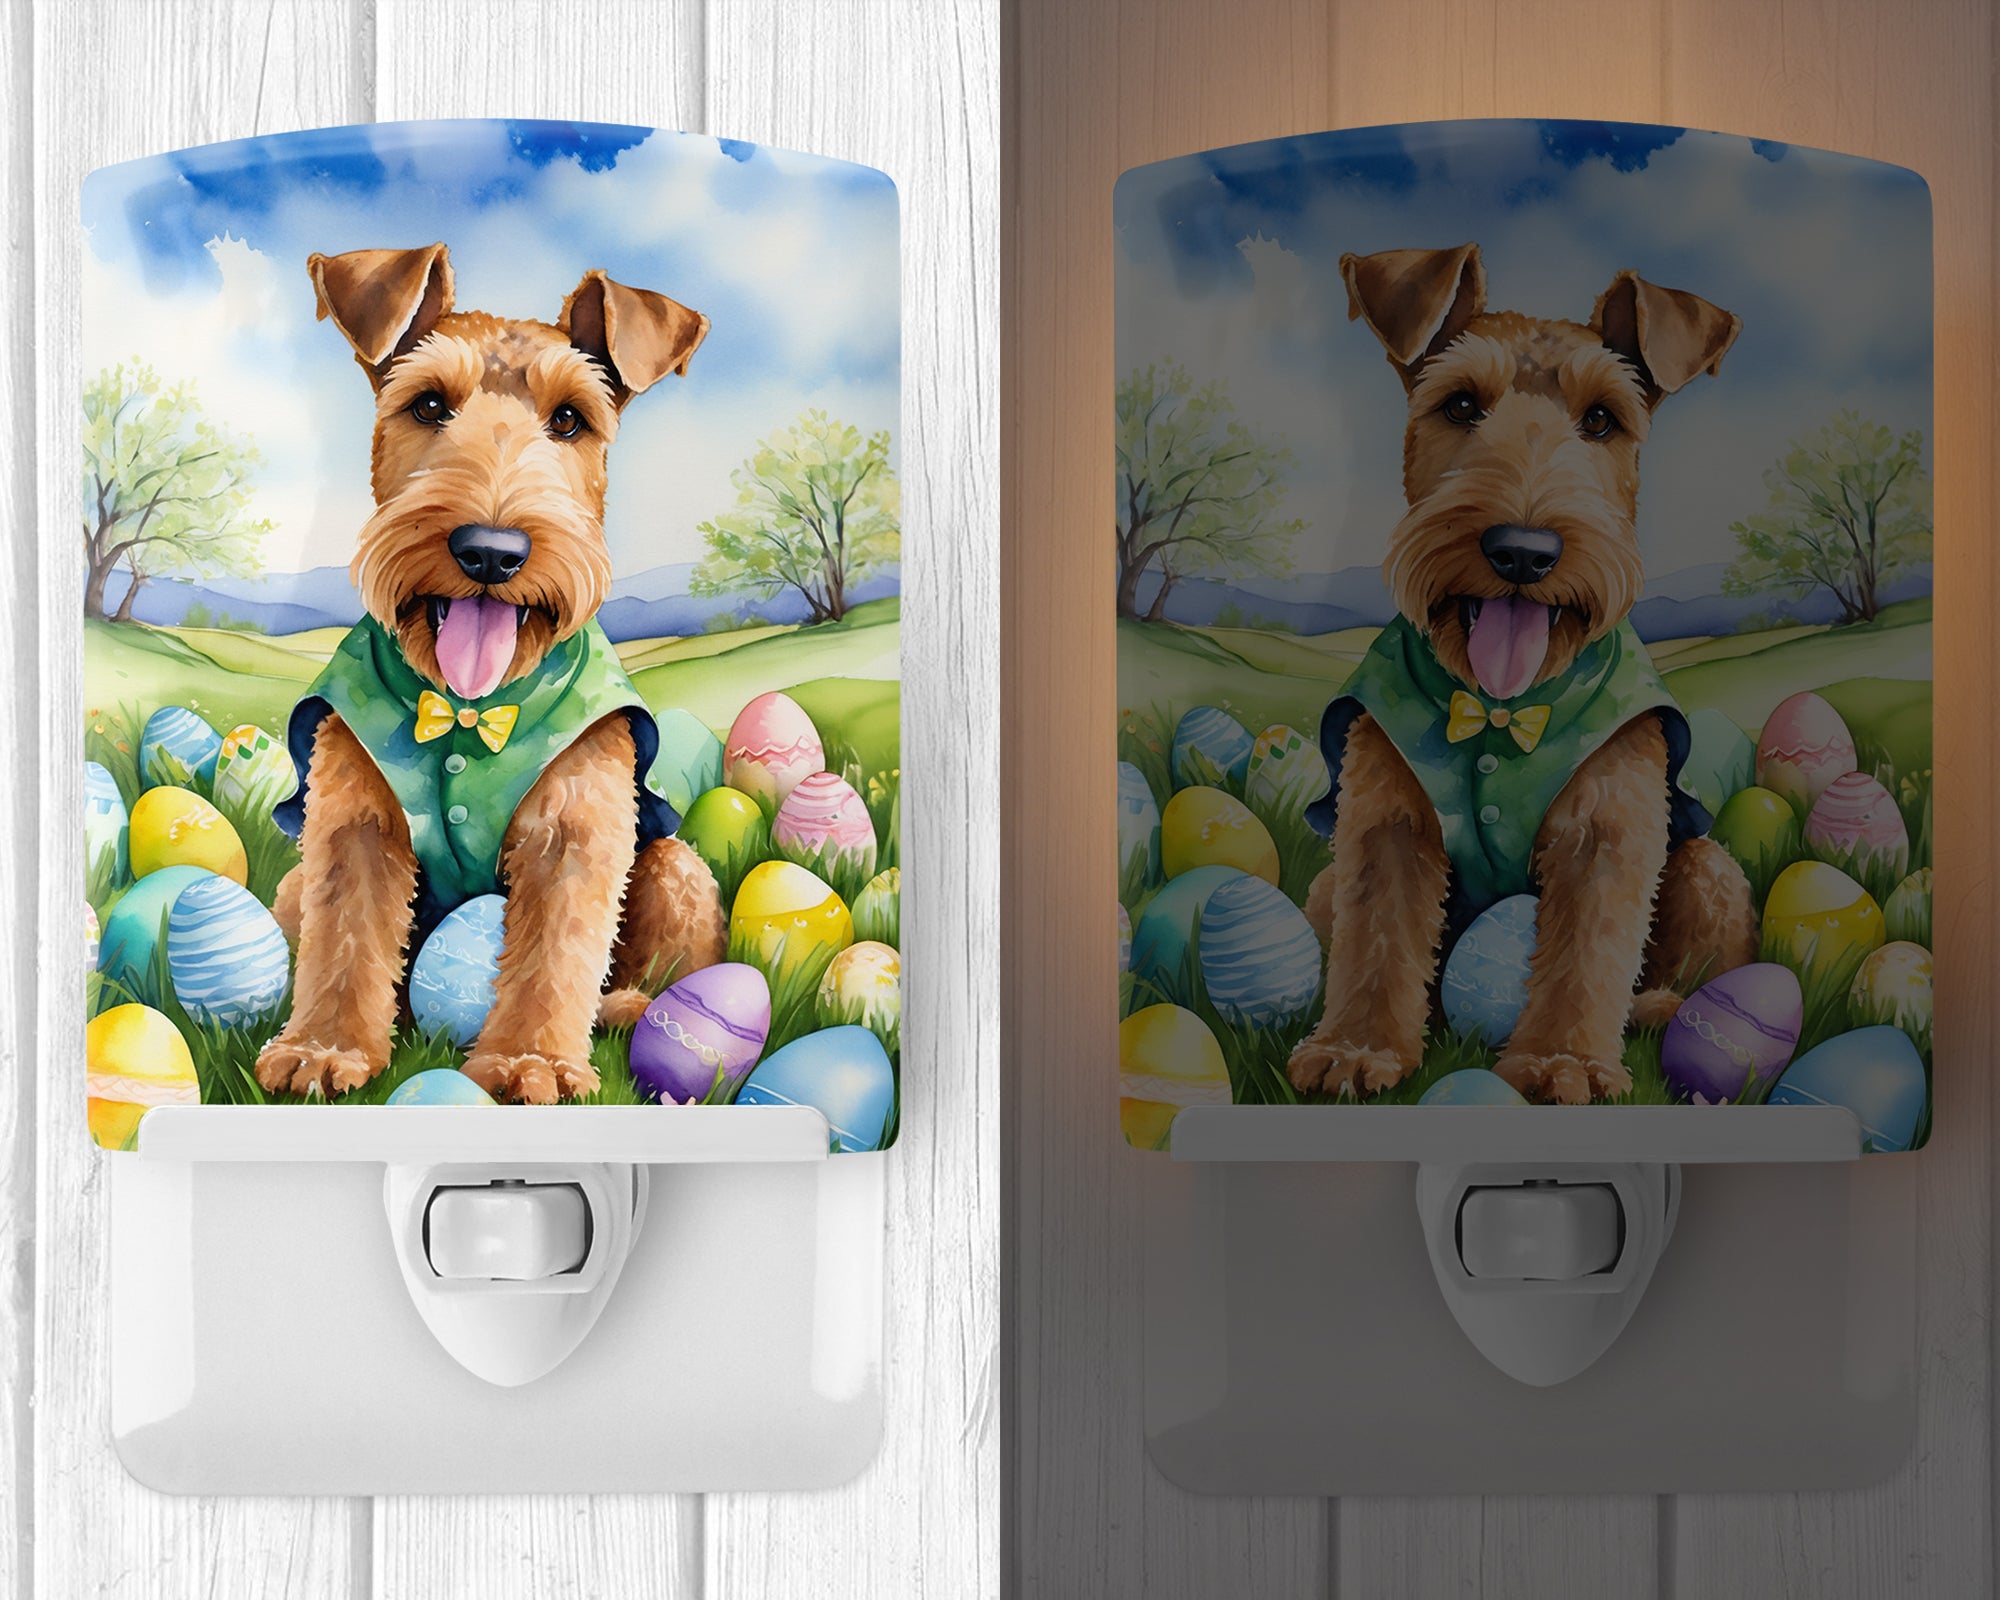 Airedale Terrier Easter Egg Hunt Ceramic Night Light